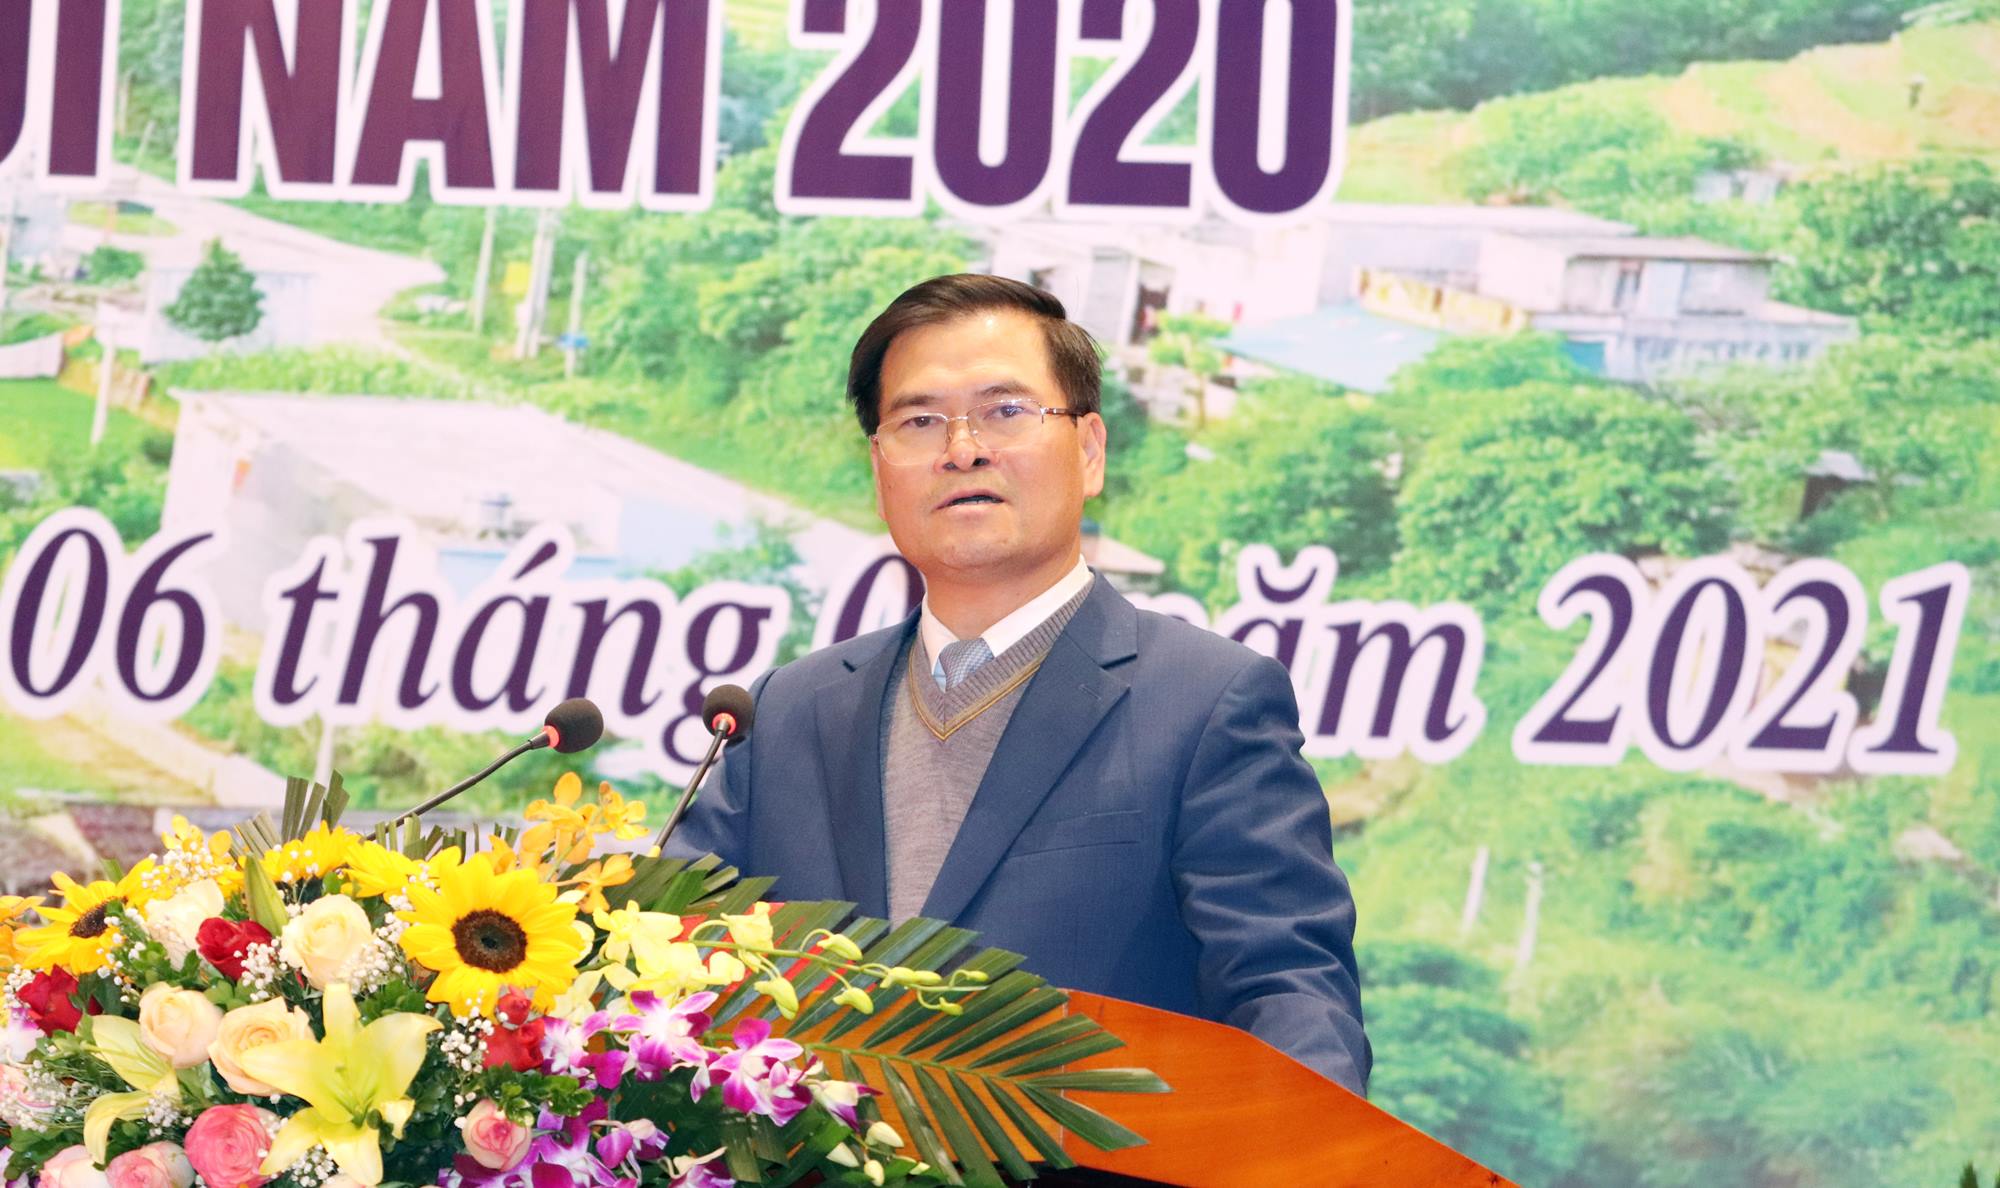 Đồng chí Bùi Văn Khắng, Phó Chủ tịch UBND tỉnh phát biểu kết luận hội nghị.